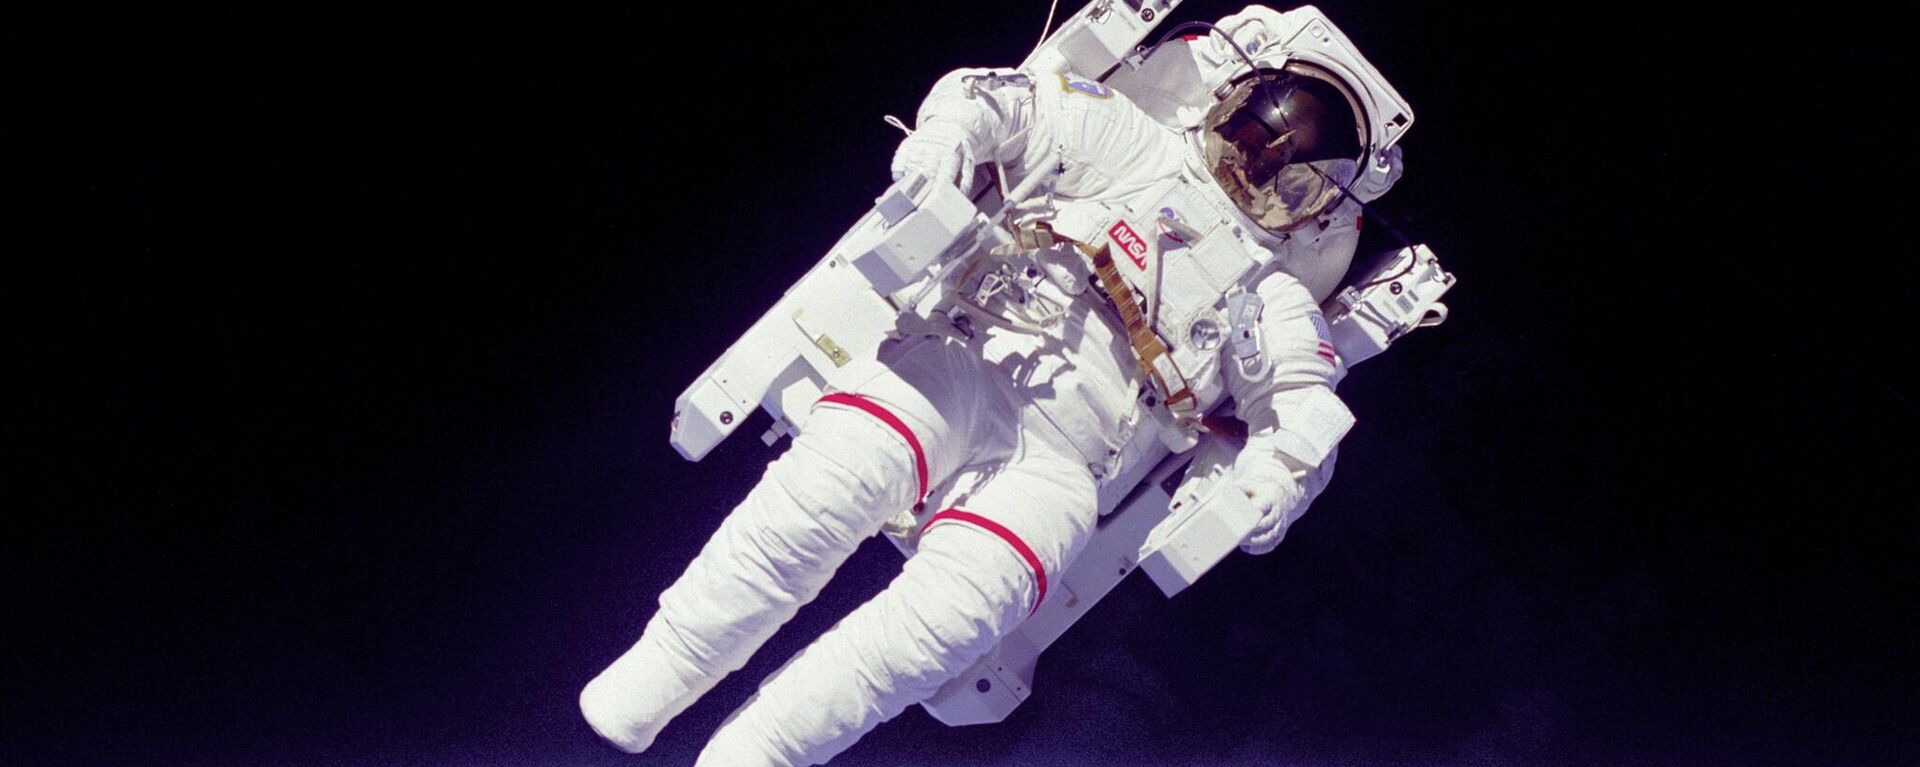 ブルース・マッカンドレス2世（1937-2017）
米海軍の飛行士・NASAの宇宙飛行士。1984年、人類初の命綱なしの宇宙遊泳を行った - Sputnik 日本, 1920, 12.04.2023